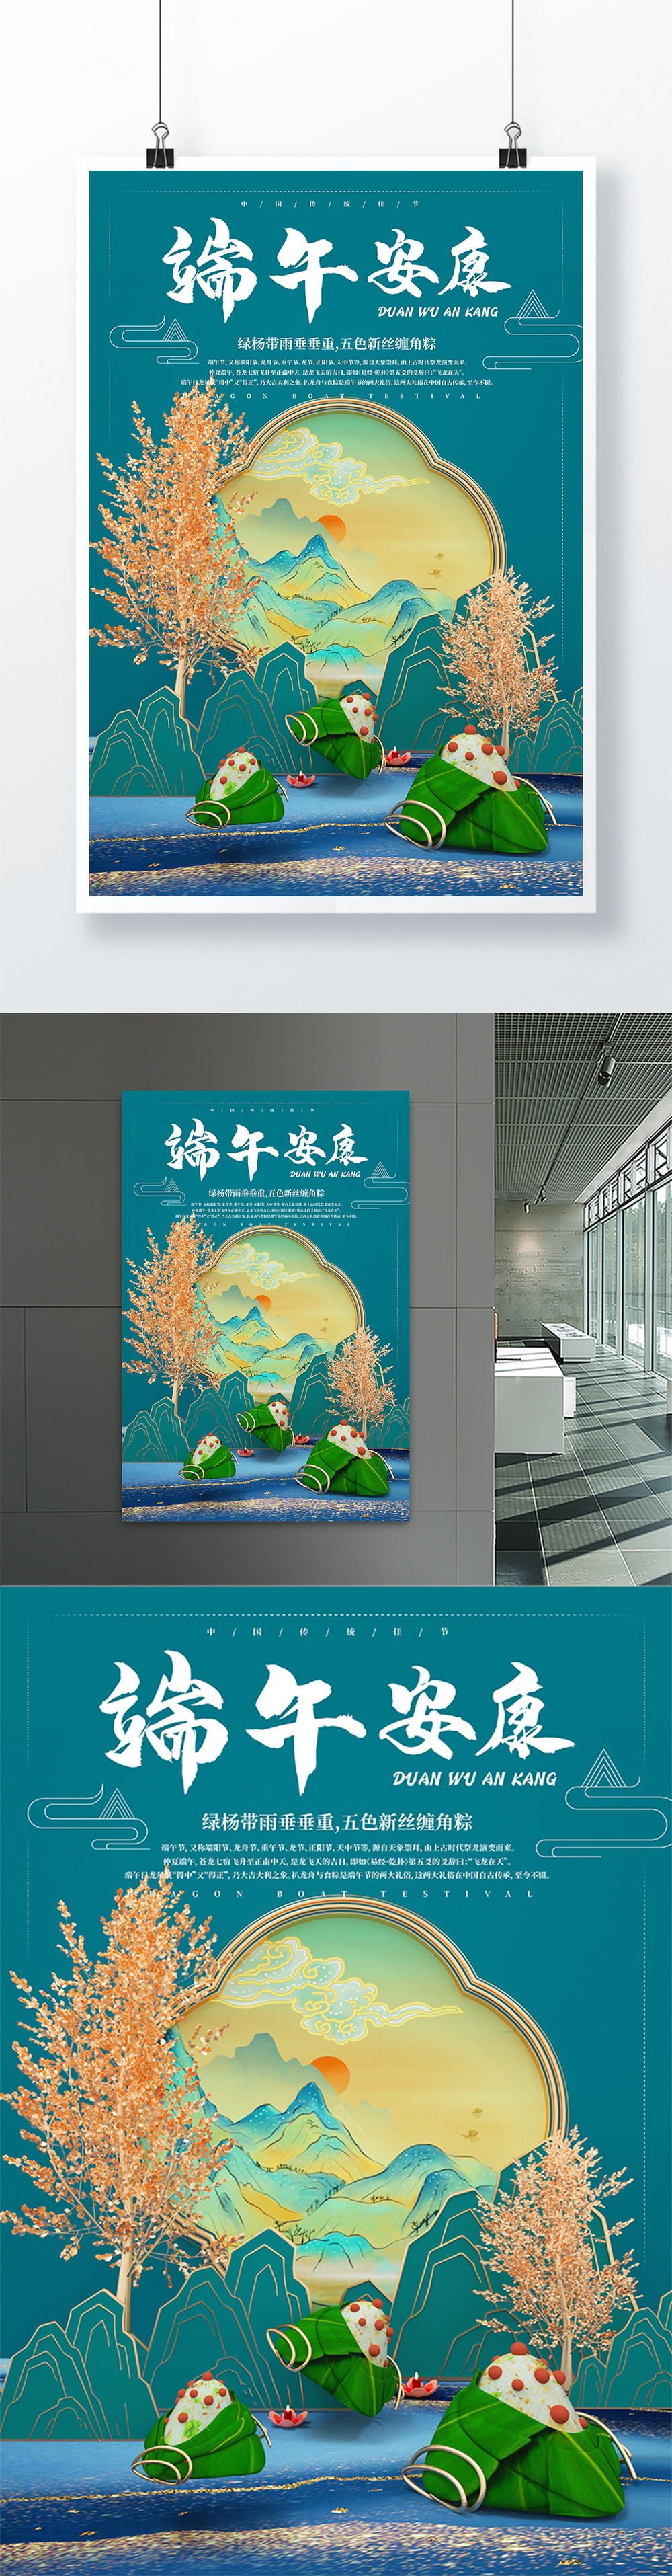 C4D立体效果中国风鎏金端午粽子海报